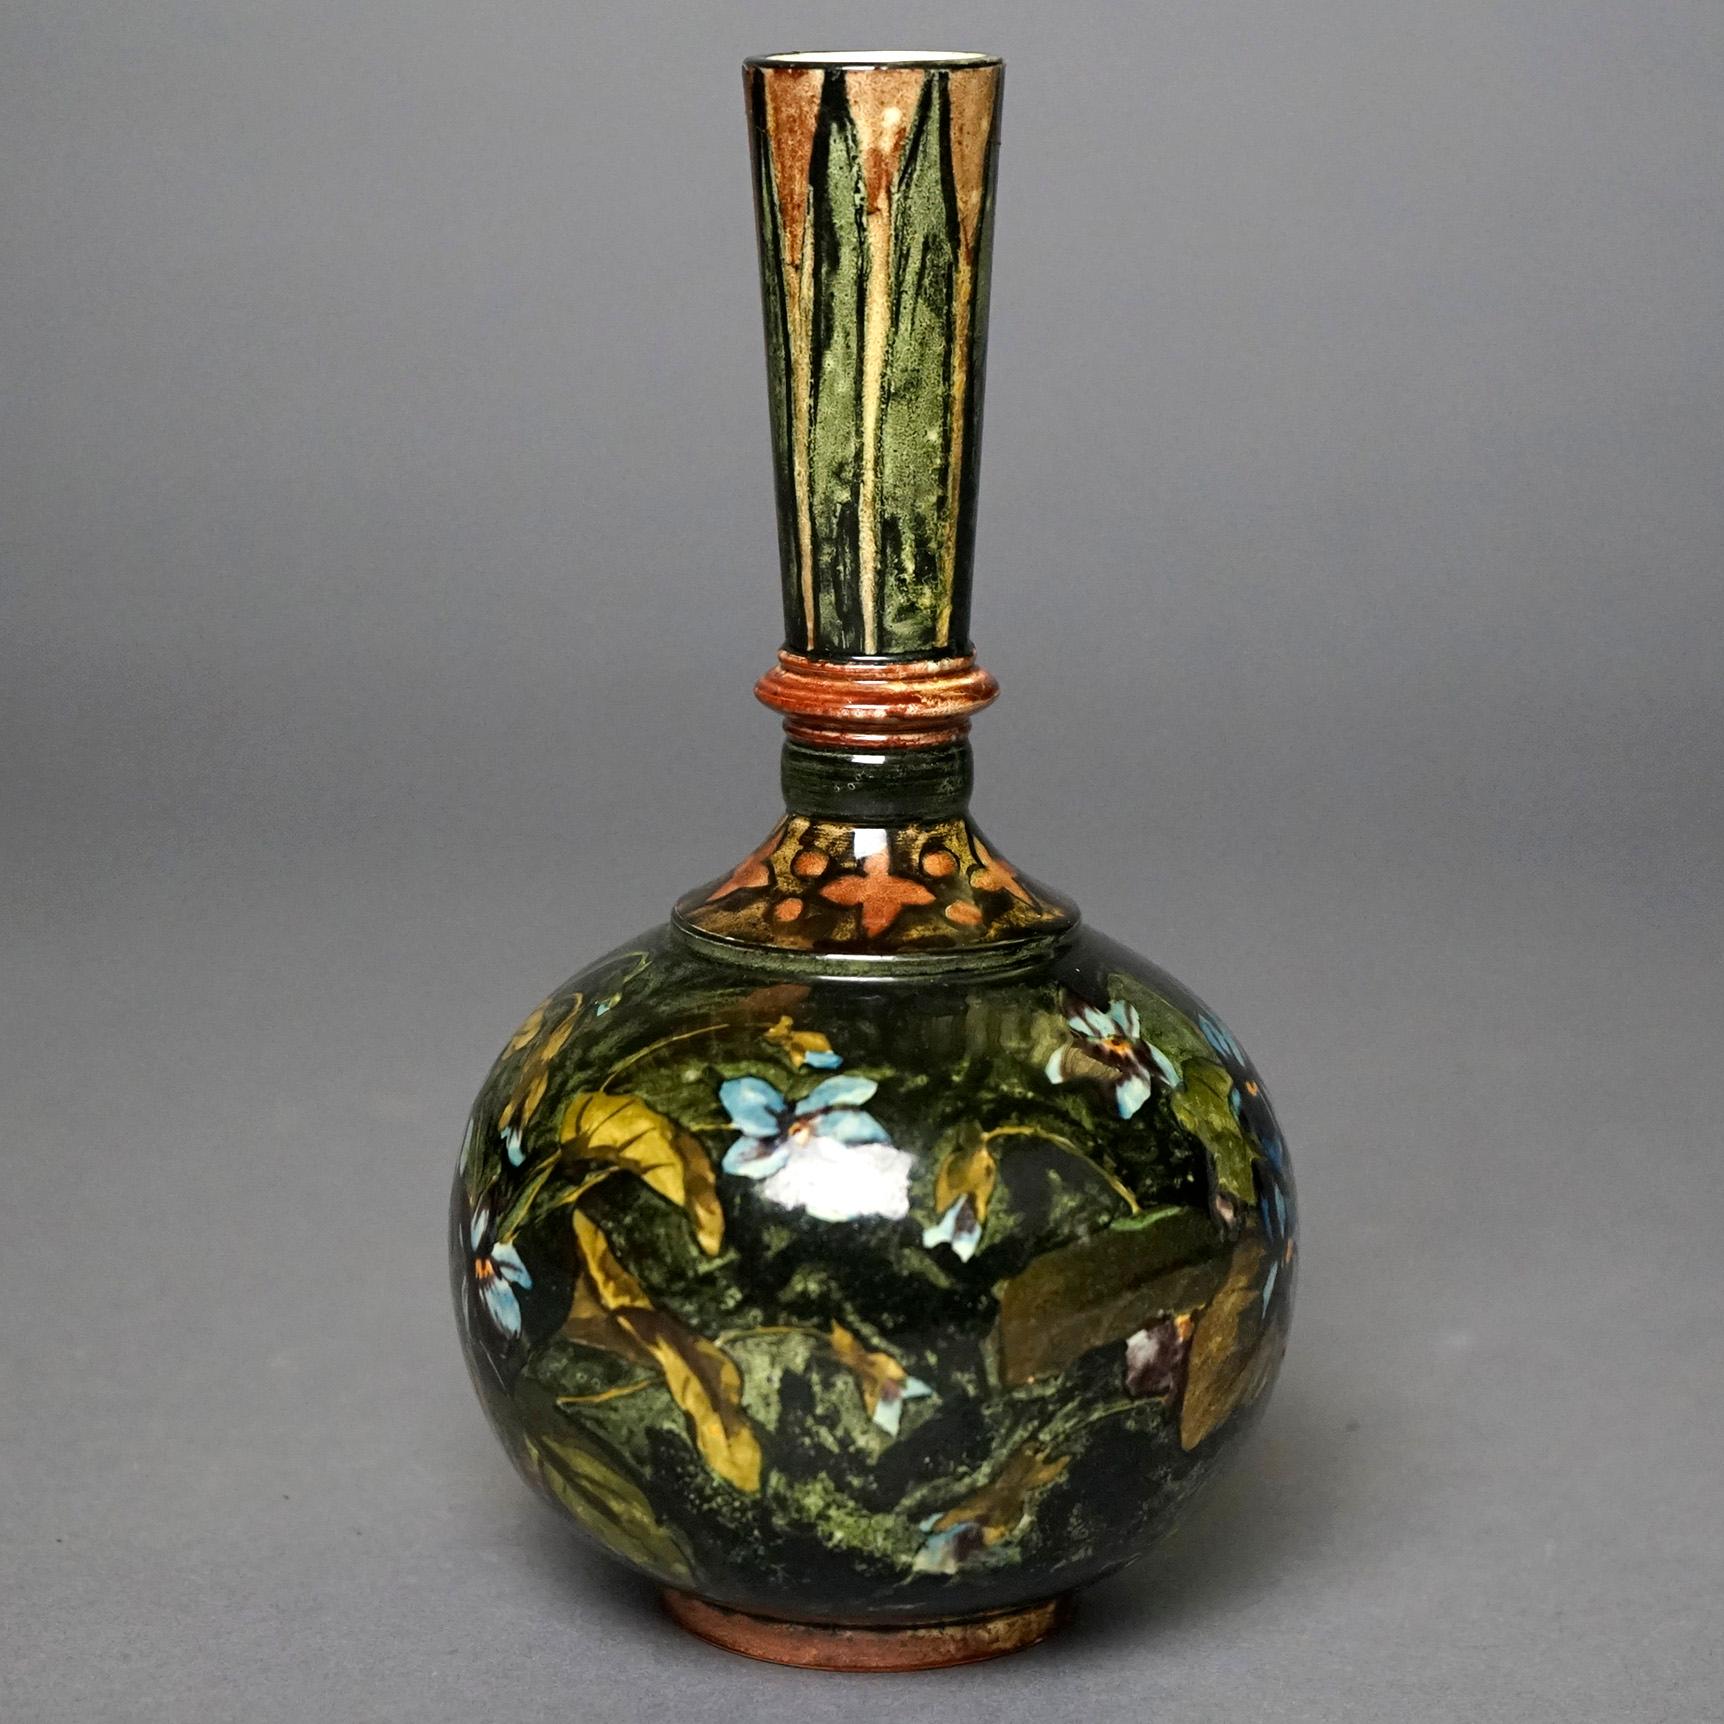 19th Century Rare Antique John Bennett Art Pottery Lidded Bottle Vase, New York, Dated 1878